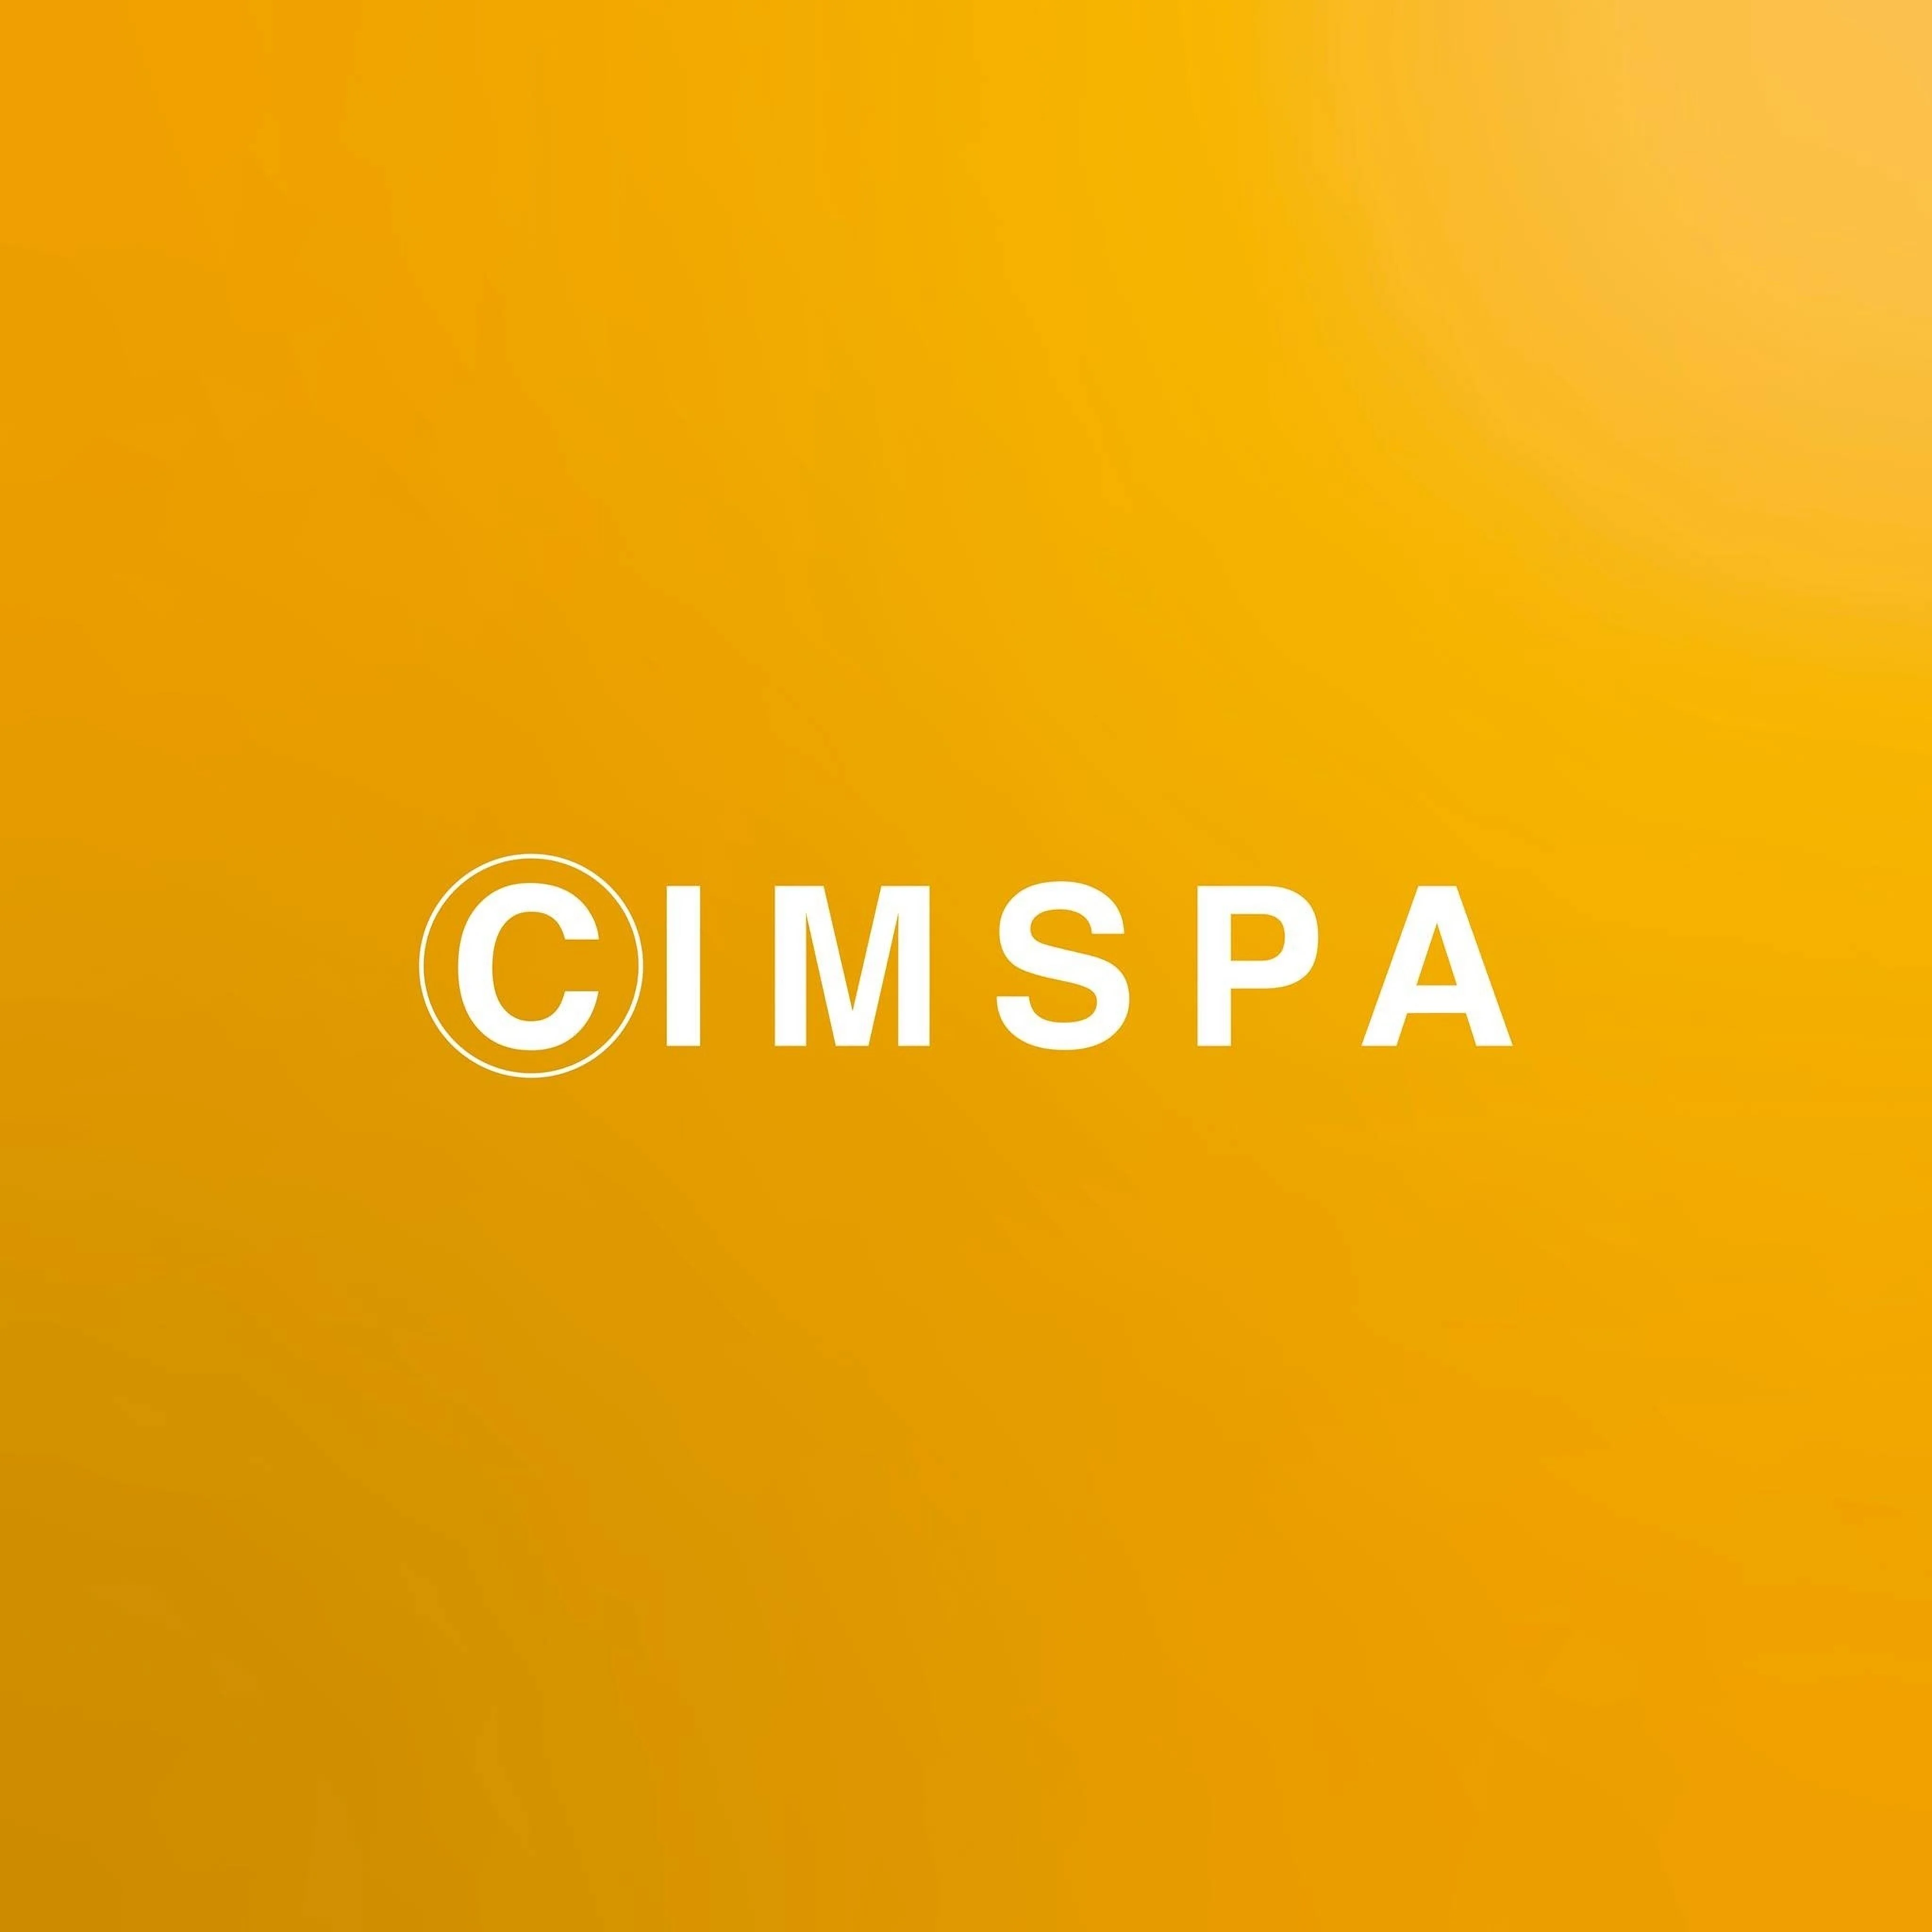 CIMSPA-1035